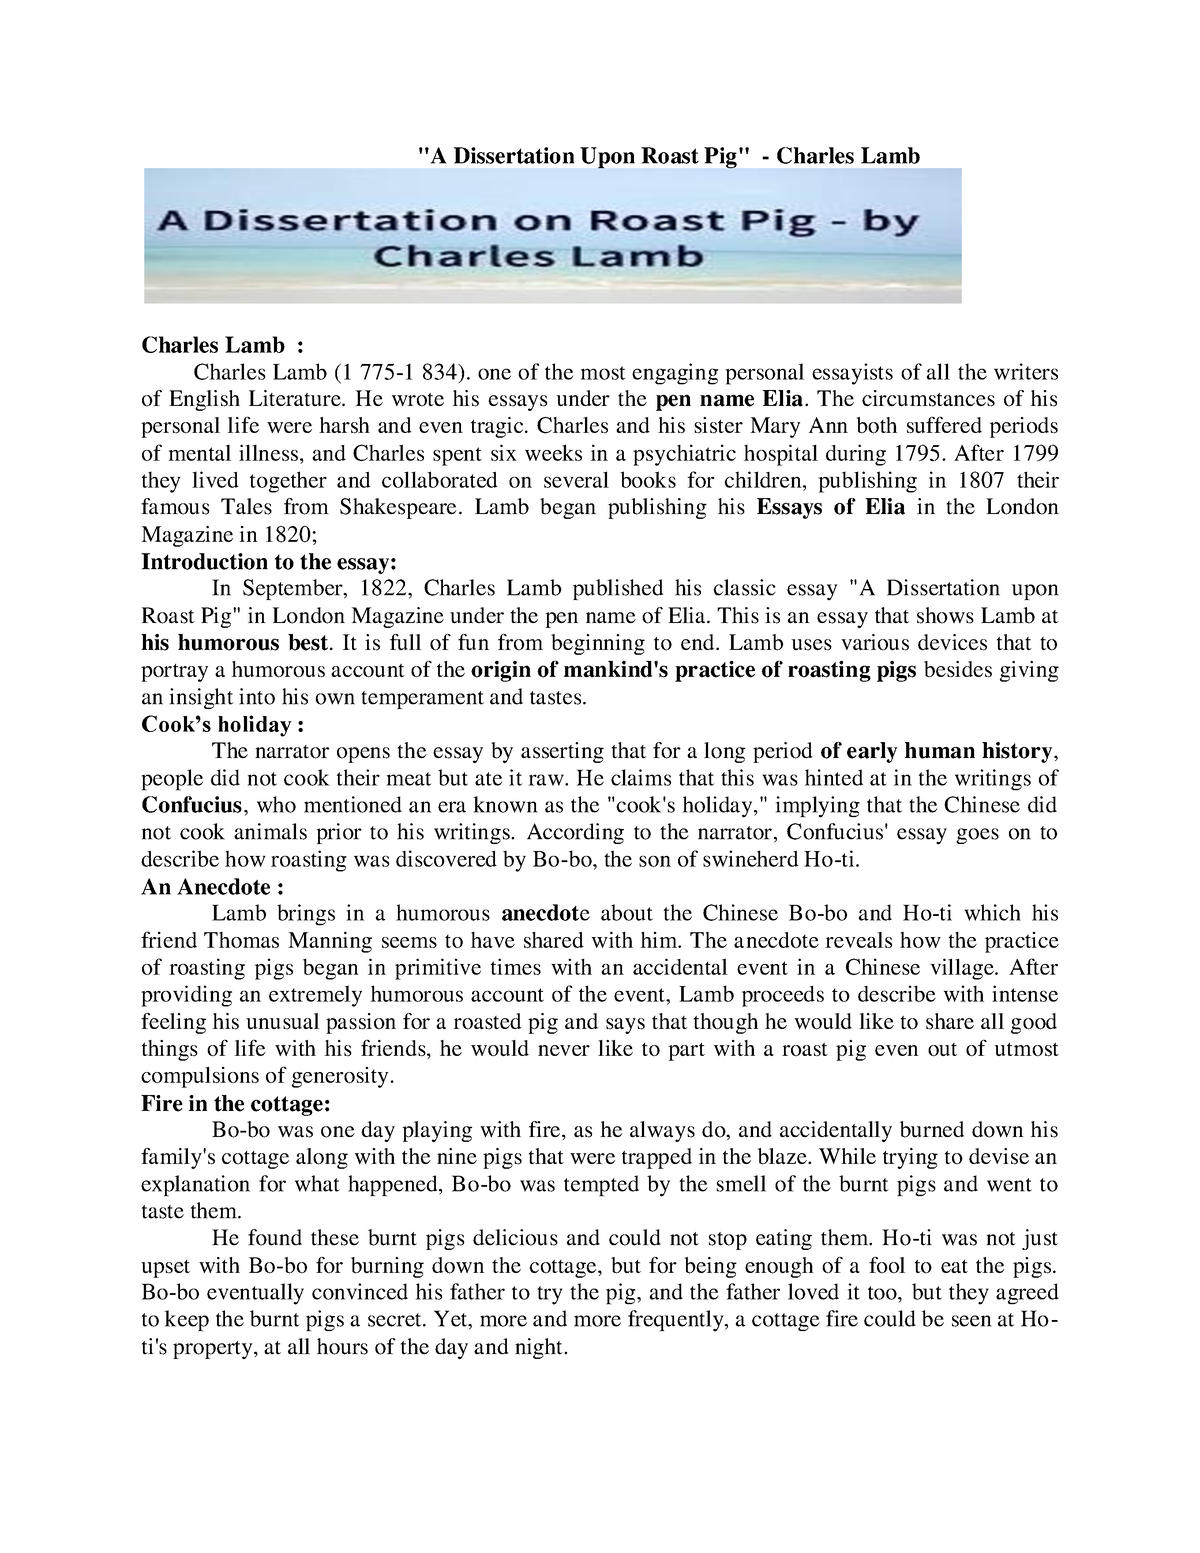 dissertation upon roast pig summary